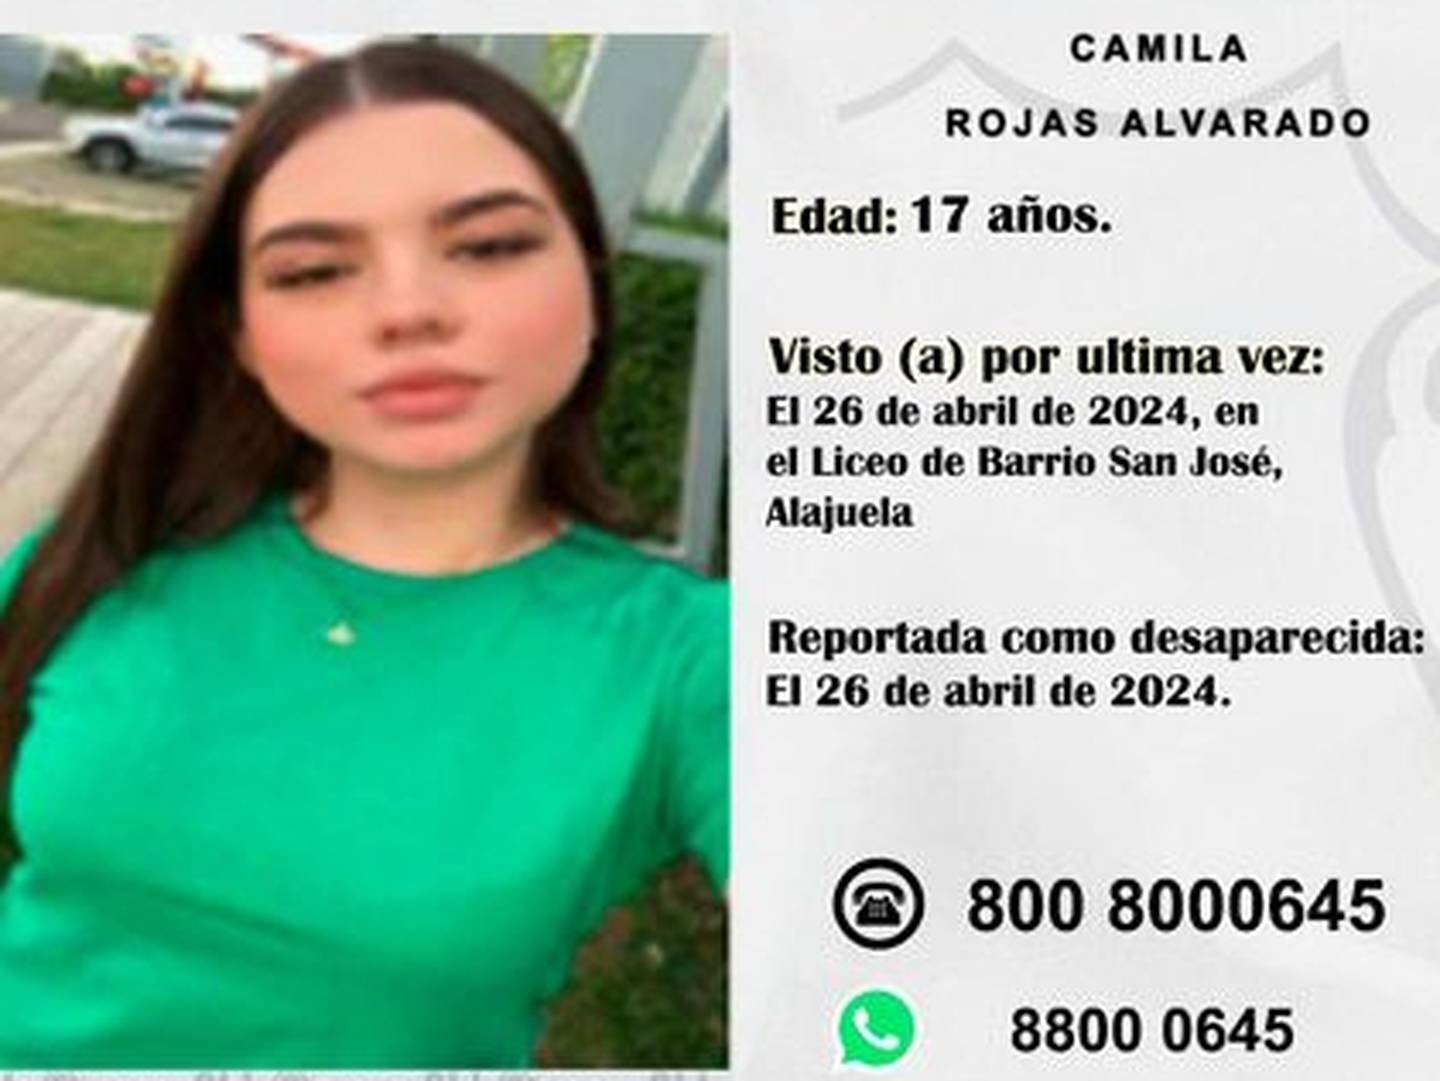 Camila Rojas de 17 años está desaparecida